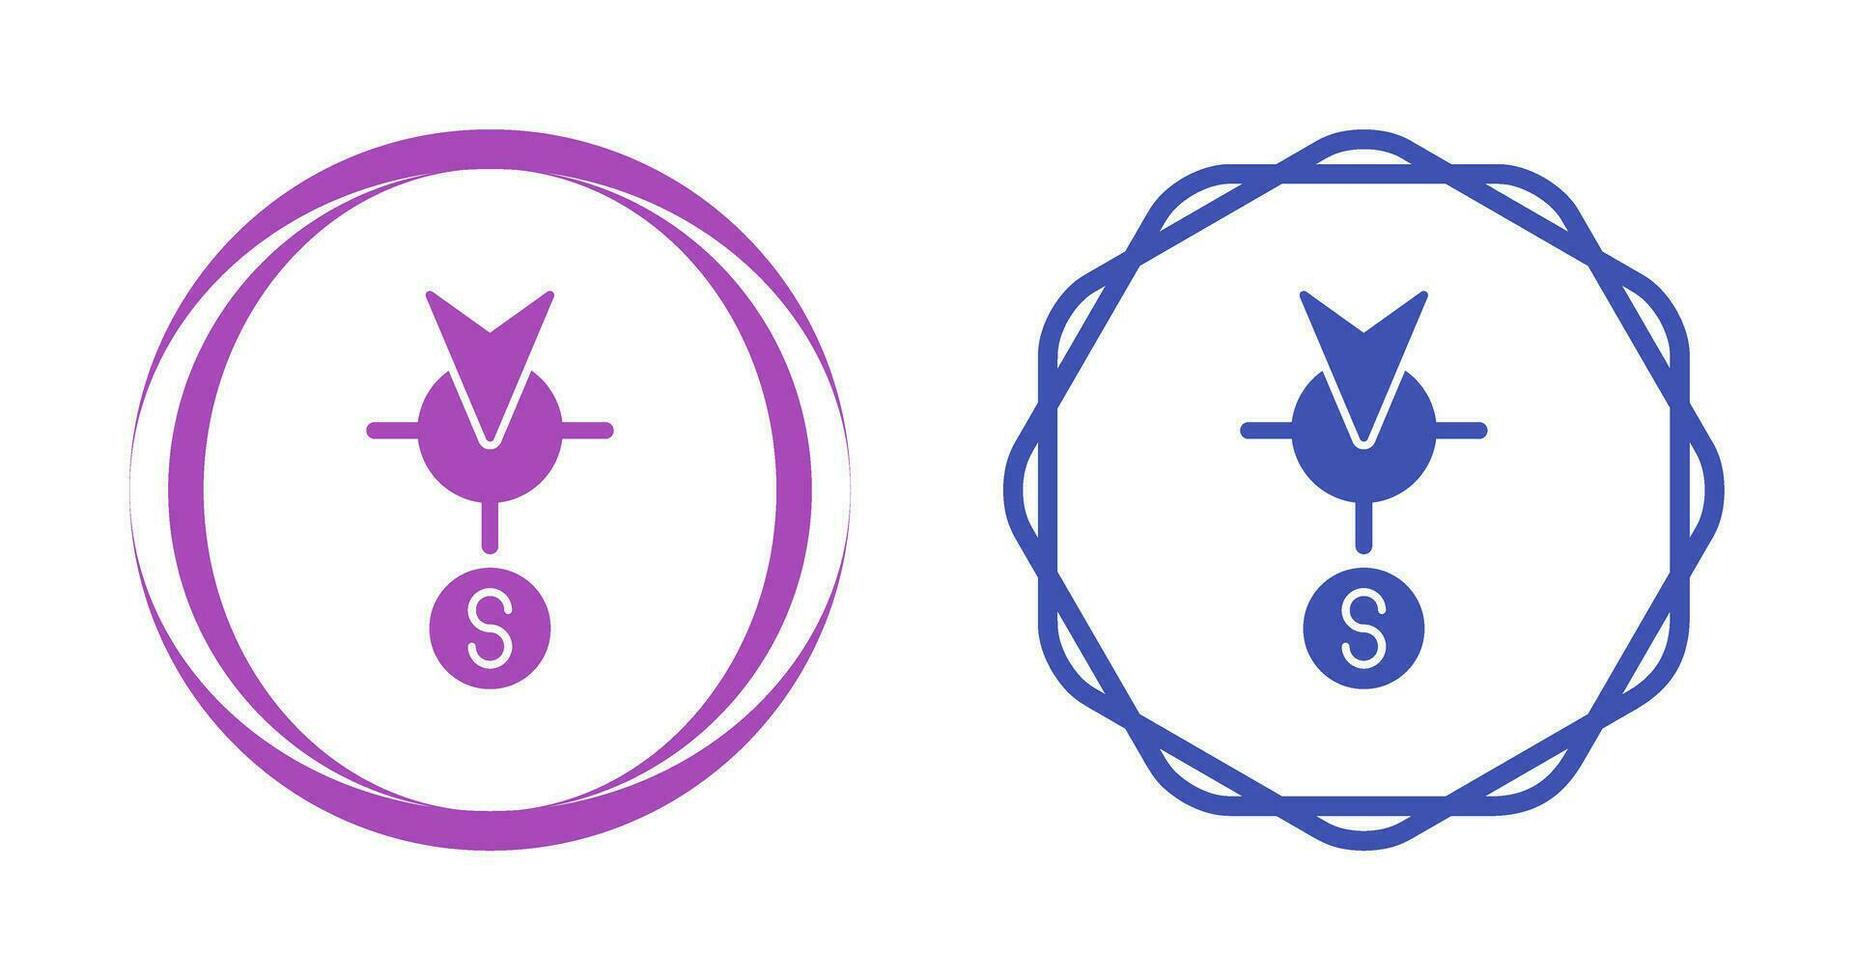 Süd-Vektor-Symbol vektor